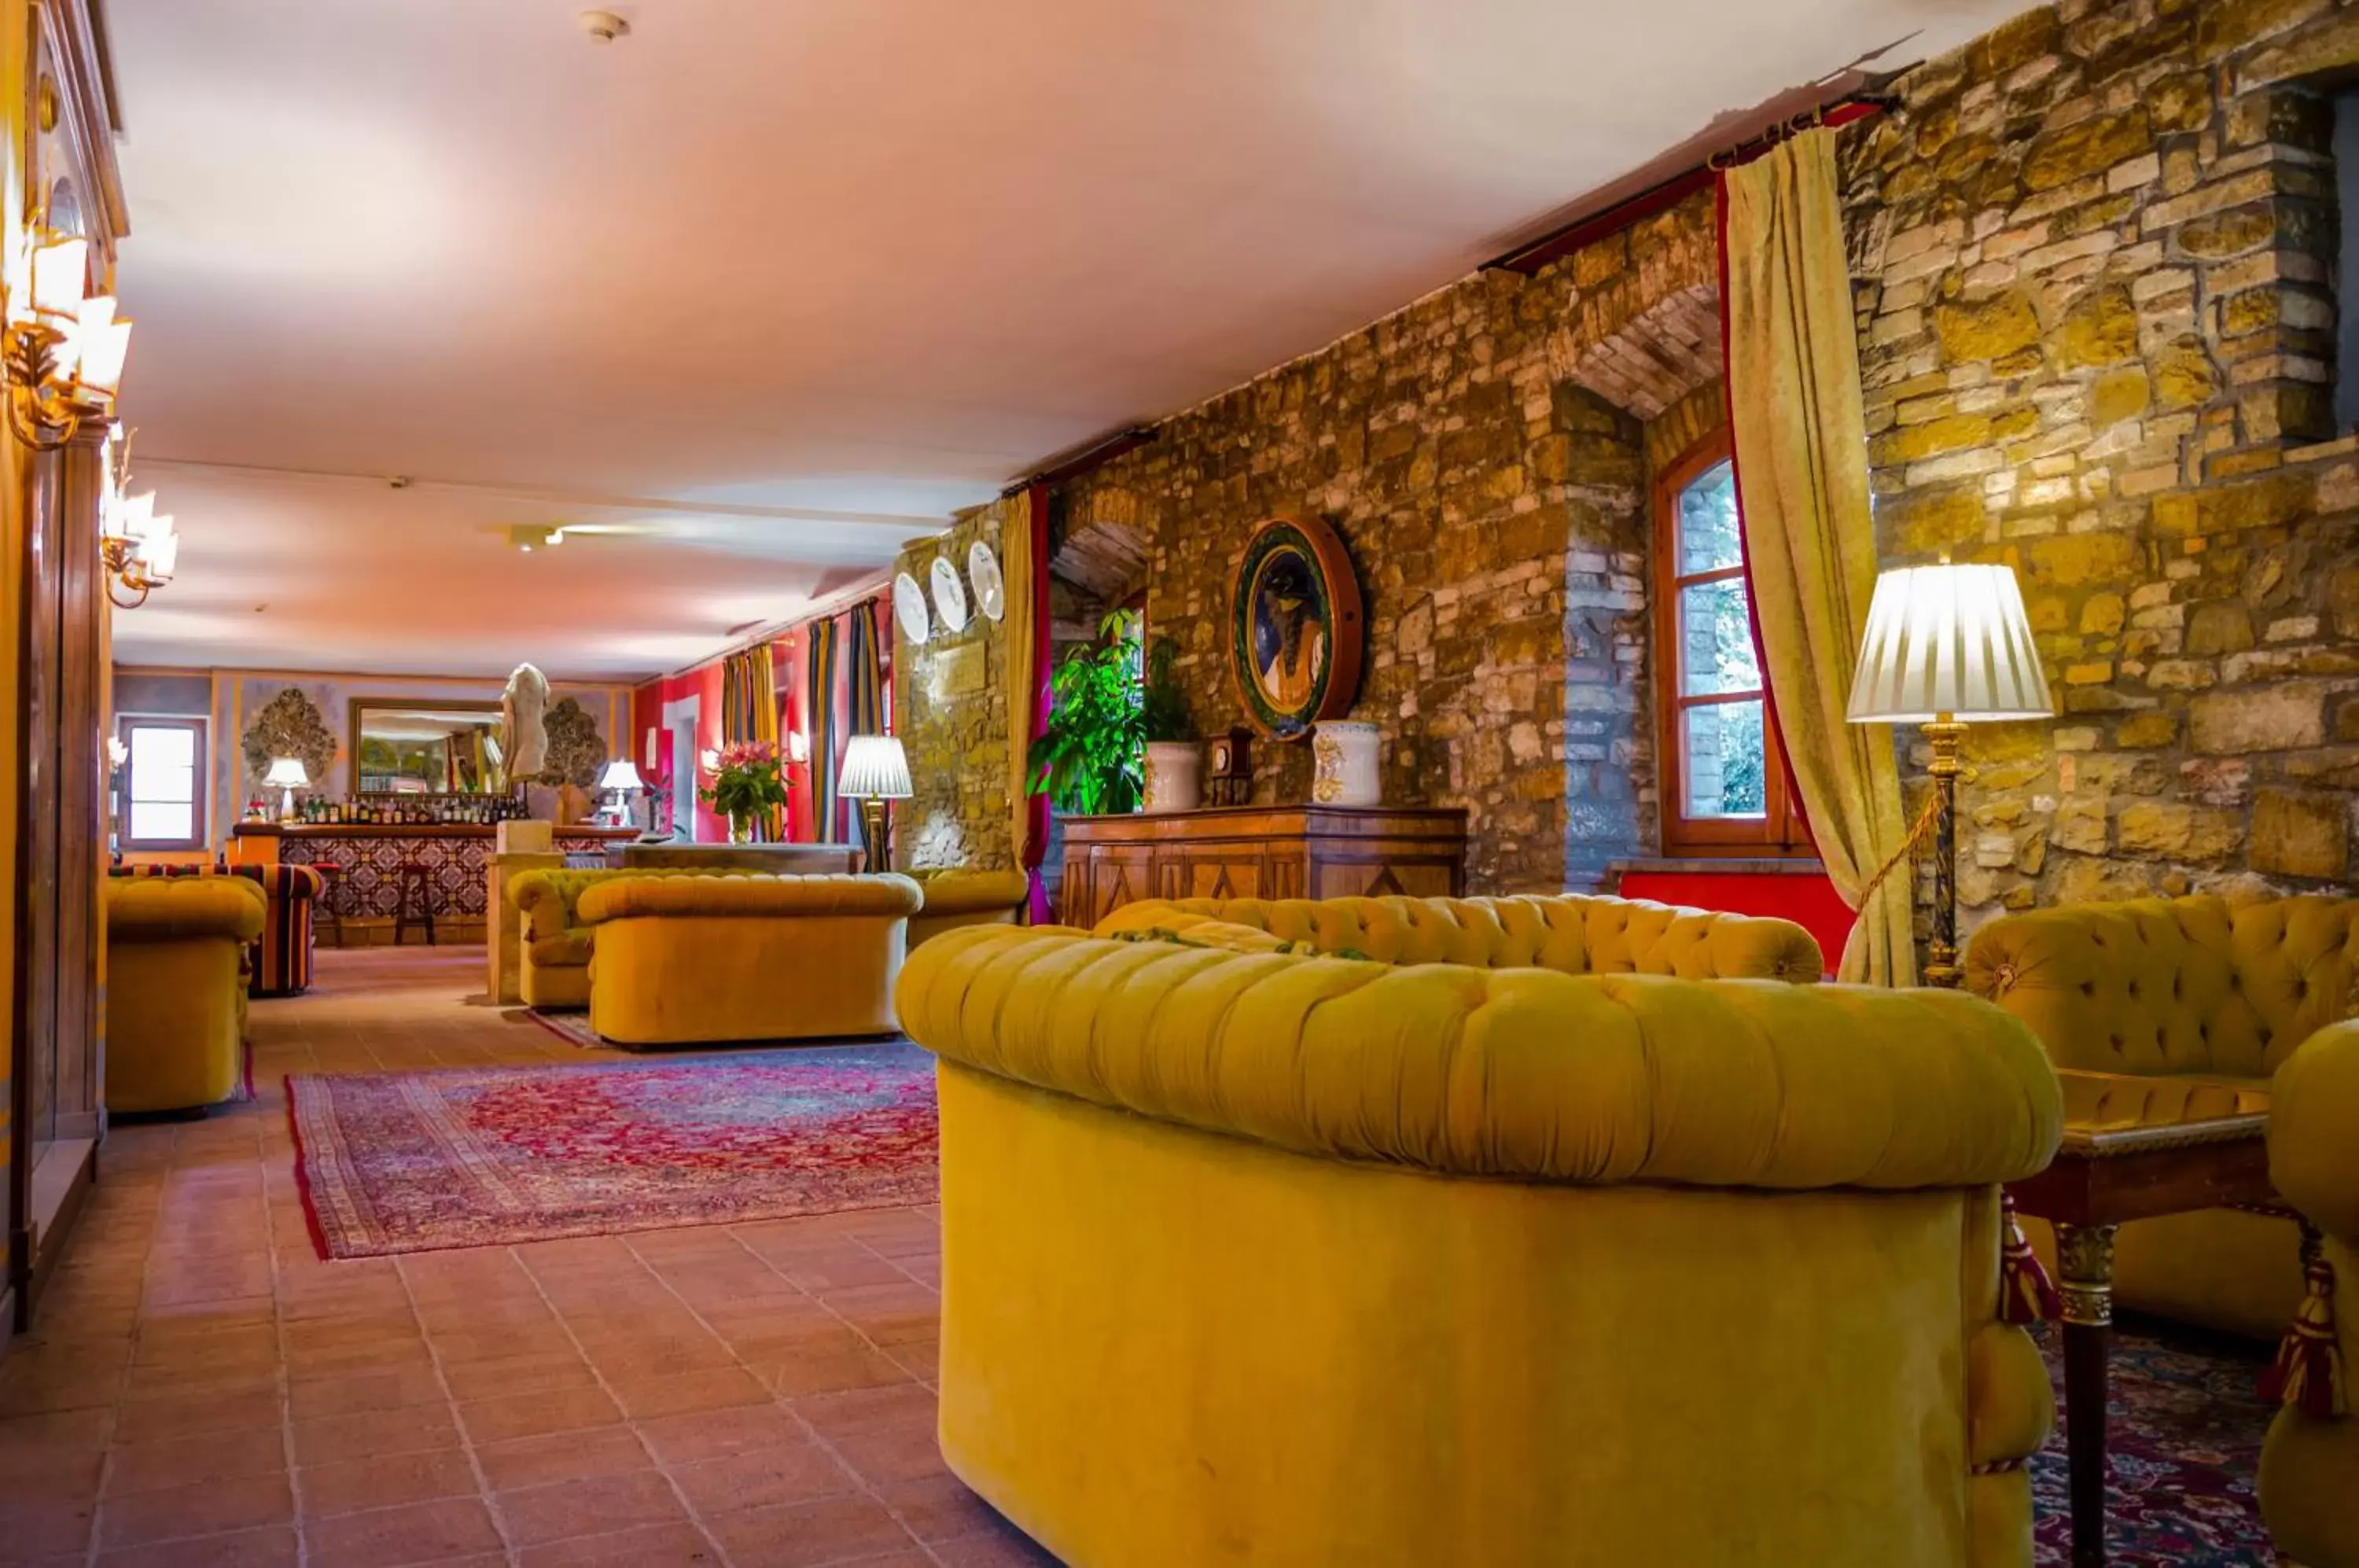 Lobby or reception, Lobby/Reception in Hotel Bramante